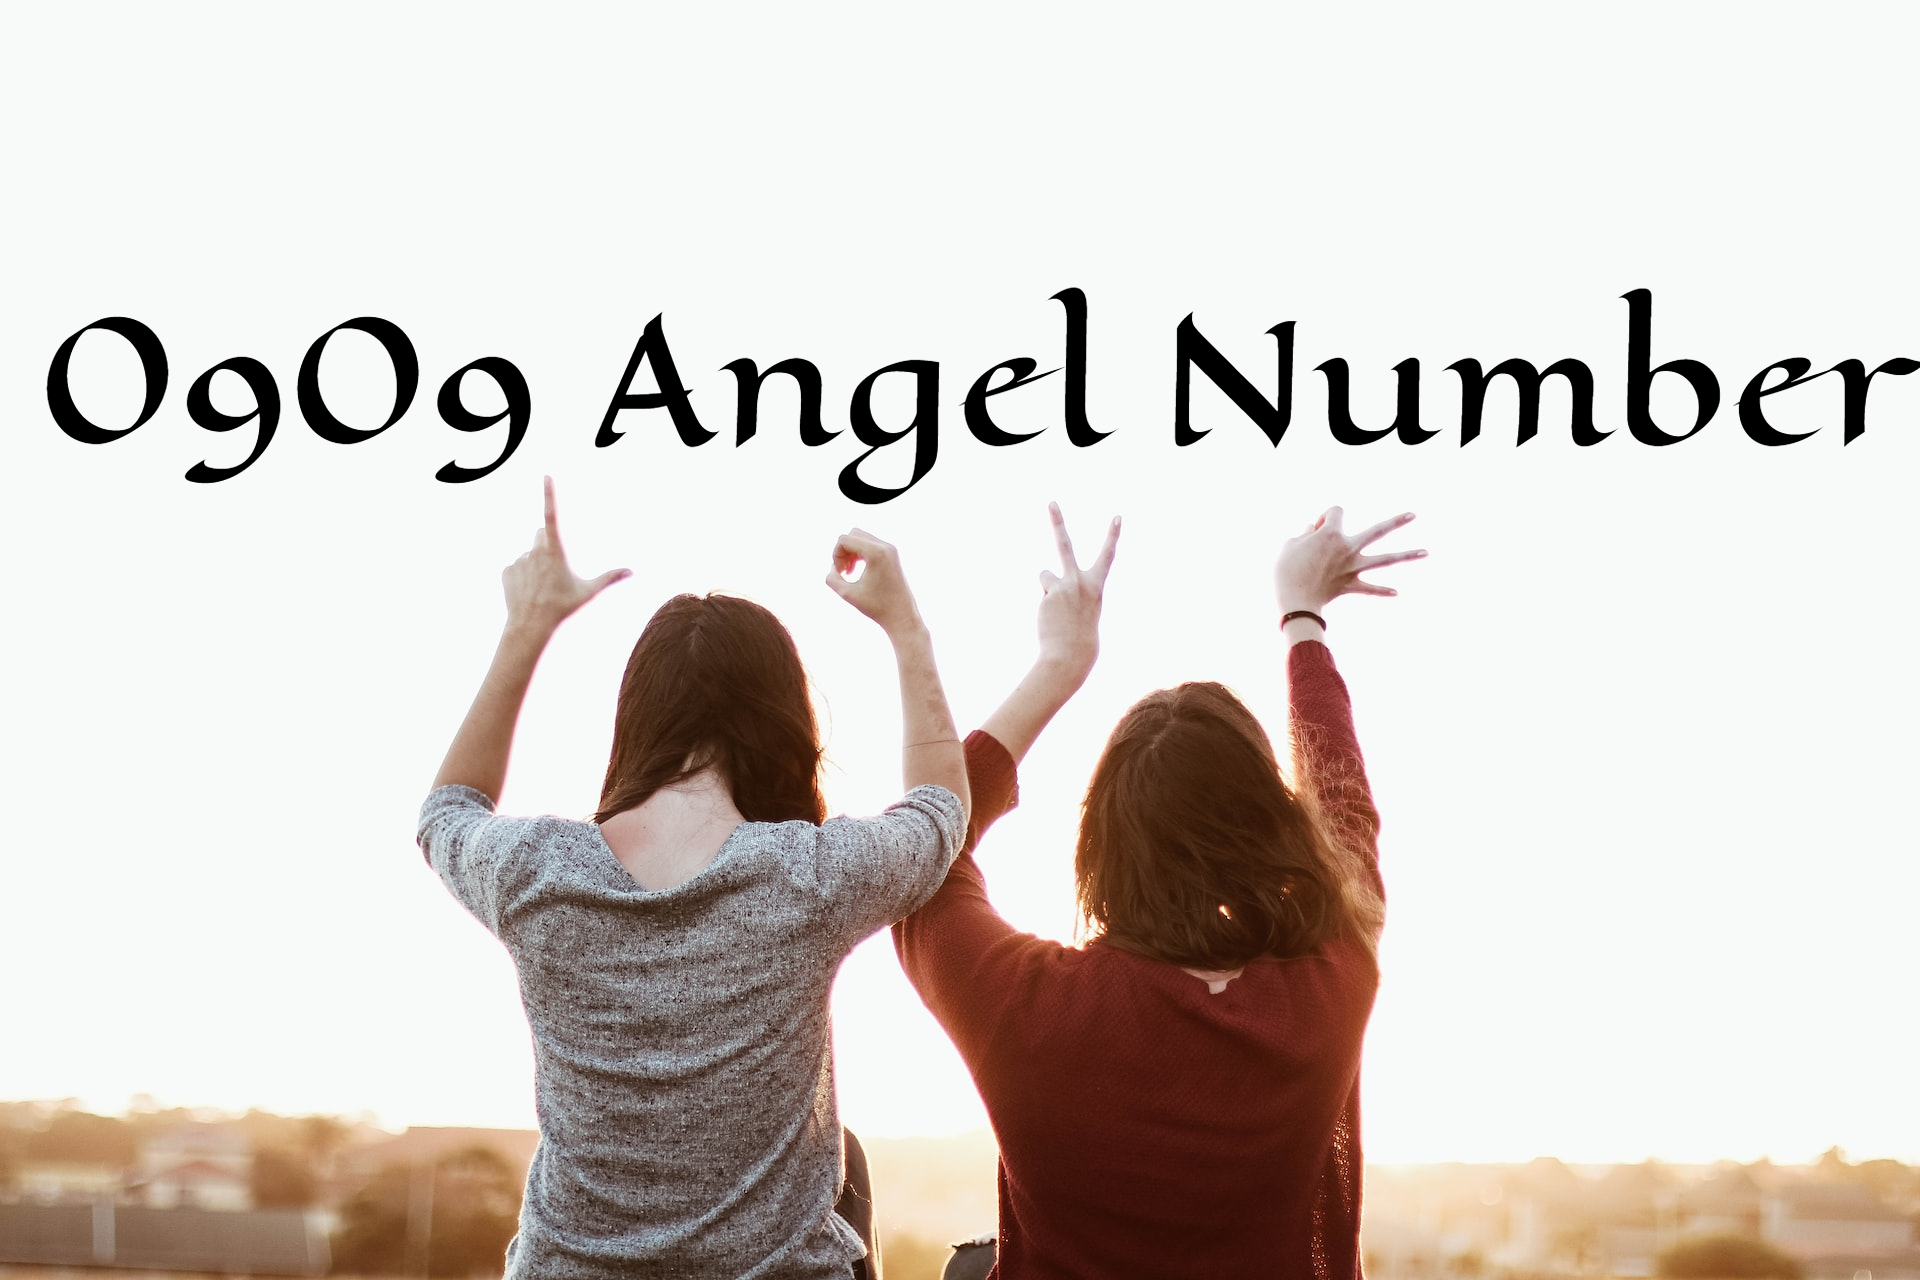 0909 Angel Number - Symbolizes Self-Assessment